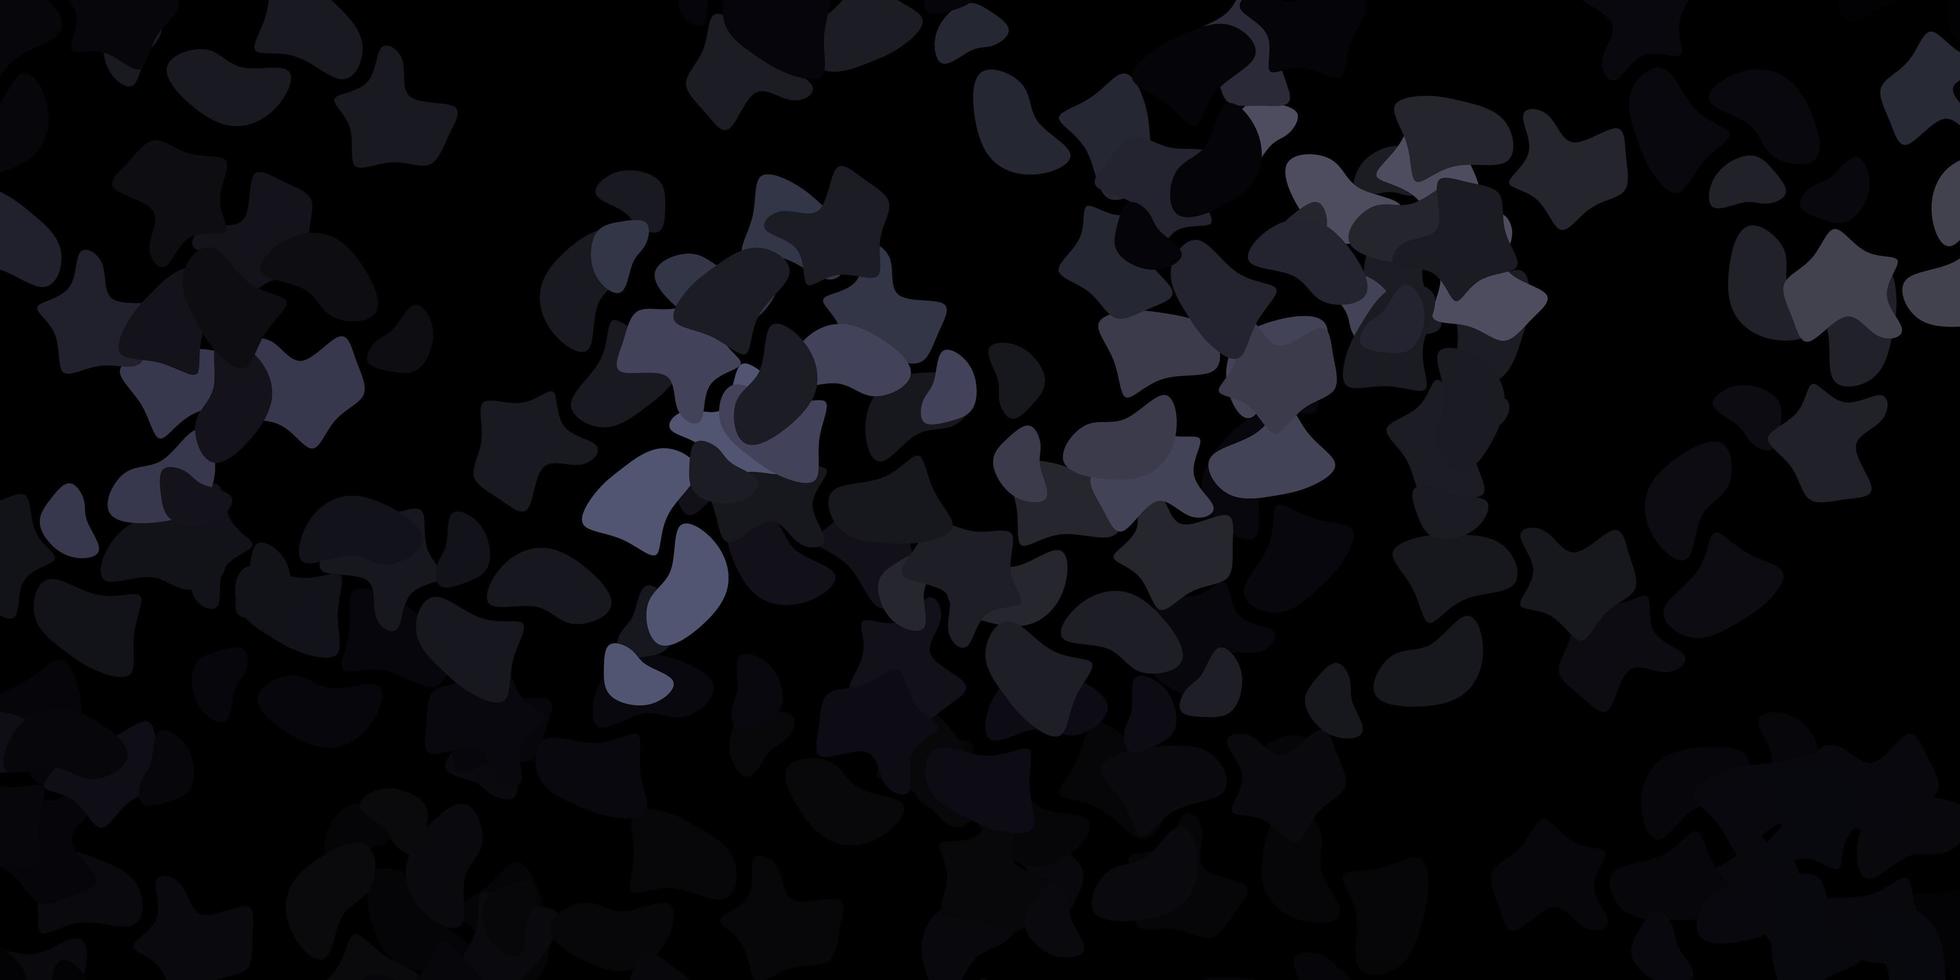 padrão de vetor cinza escuro com formas abstratas.